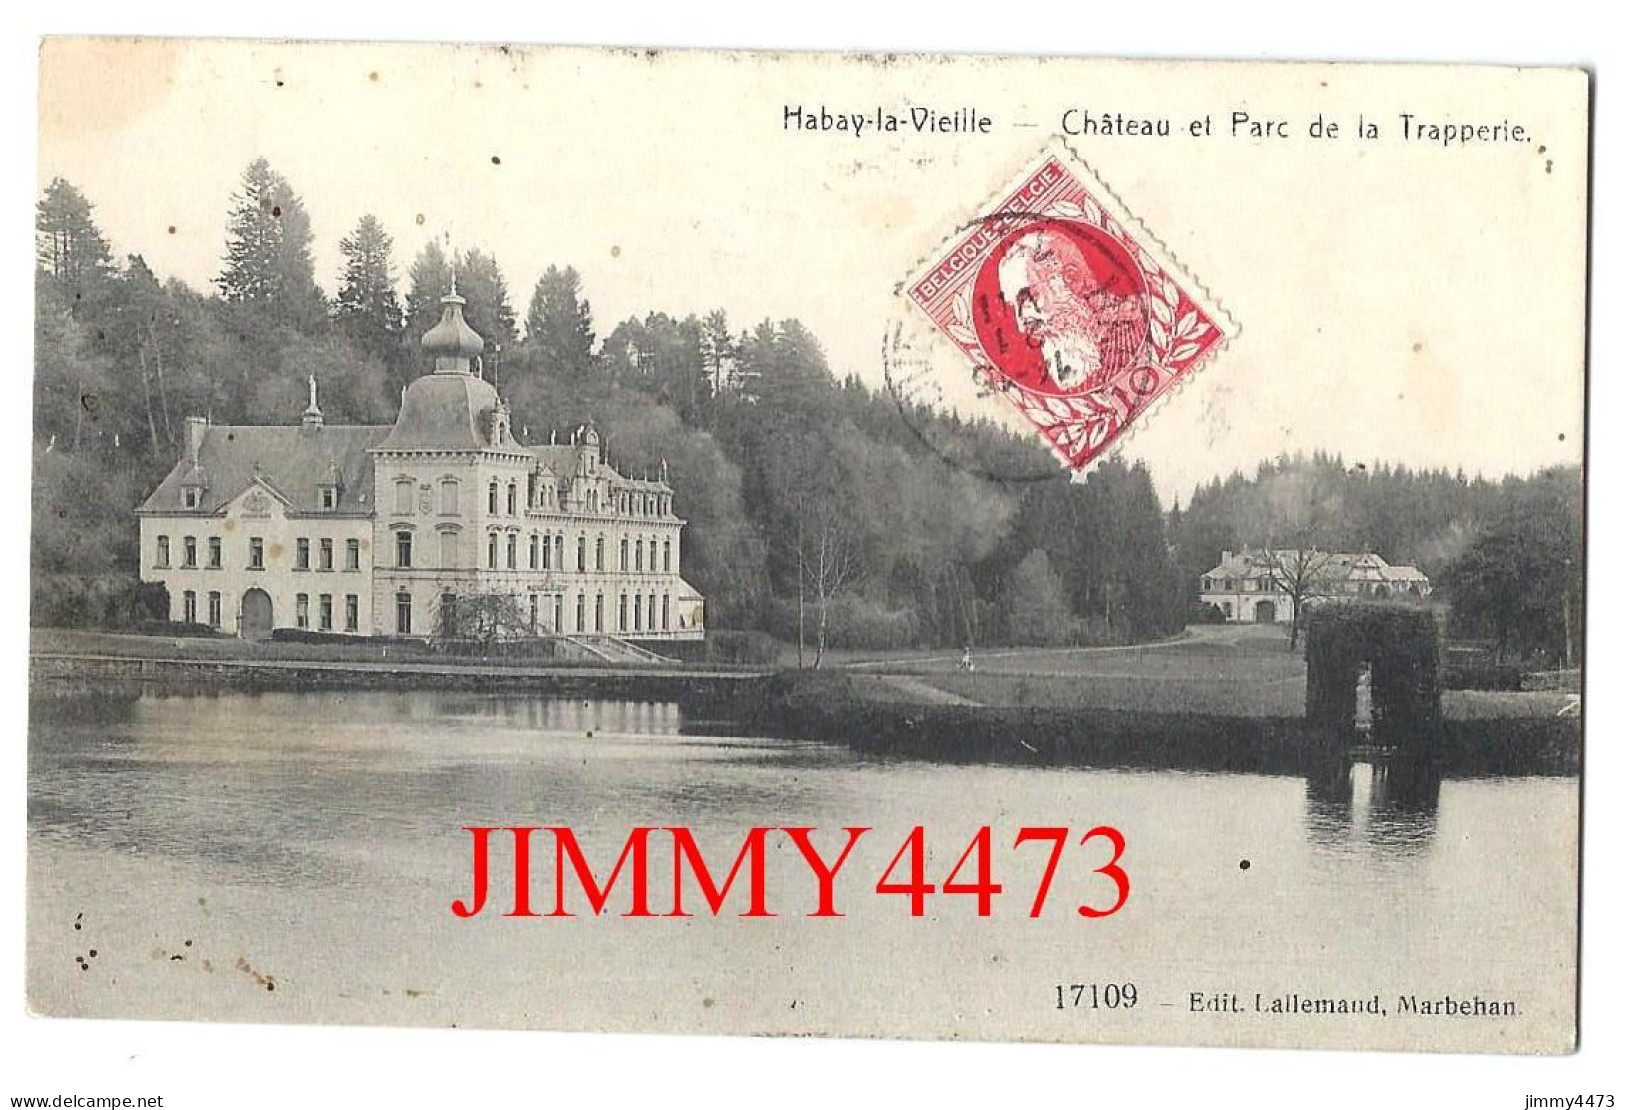 HABAY-la-VIEILLE En 1911 - Château Et Parc De La Trapperie ( Luxembourg Belgique ) Edit. Lallemand Marbeh N°17109 - Habay